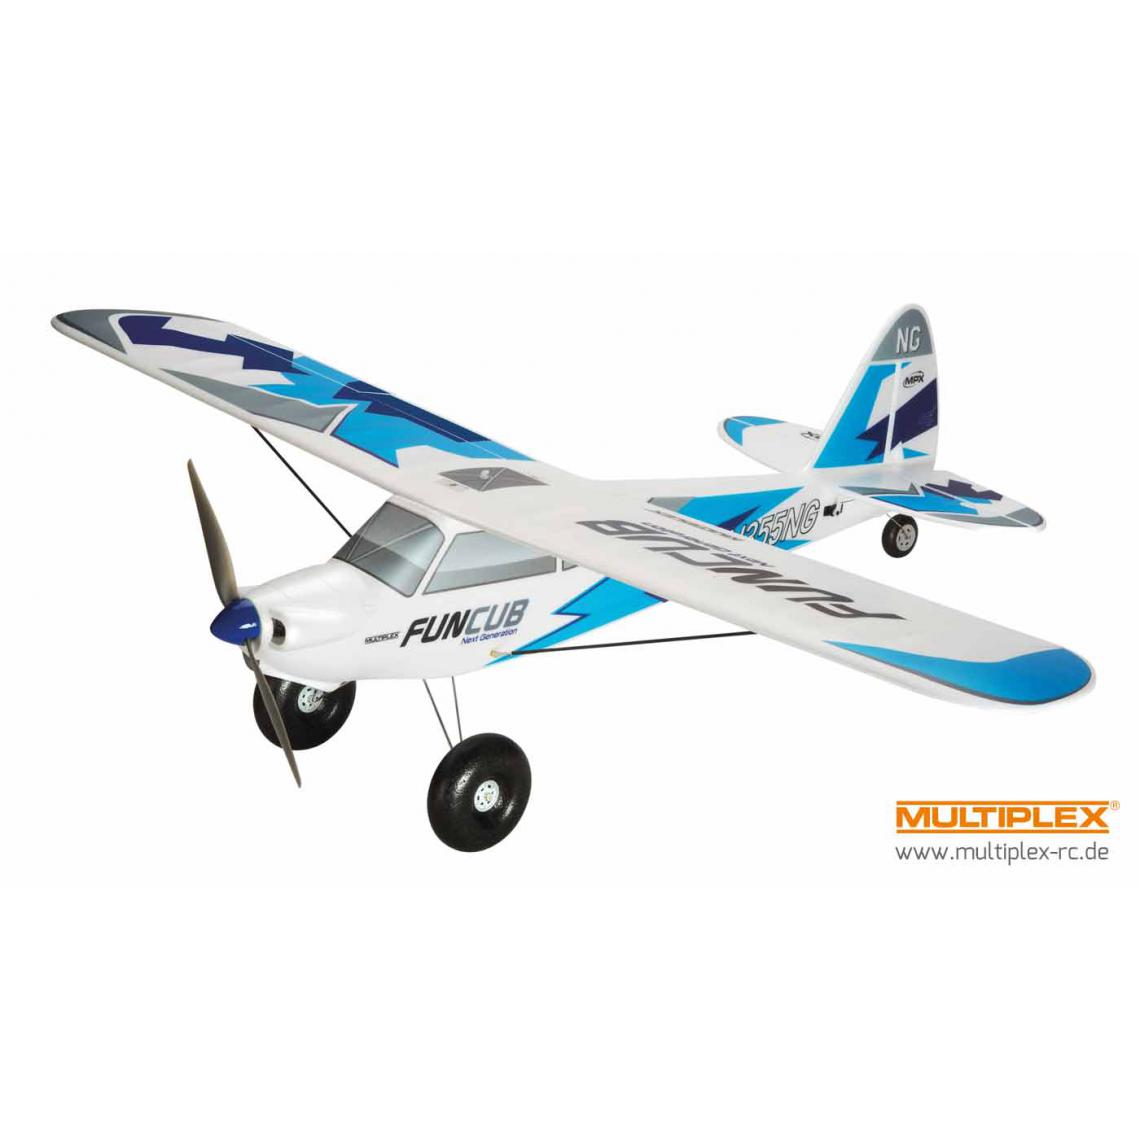 Multiplex - RR FunCub NG bleu Multiplex (Next Generation) - Avions RC